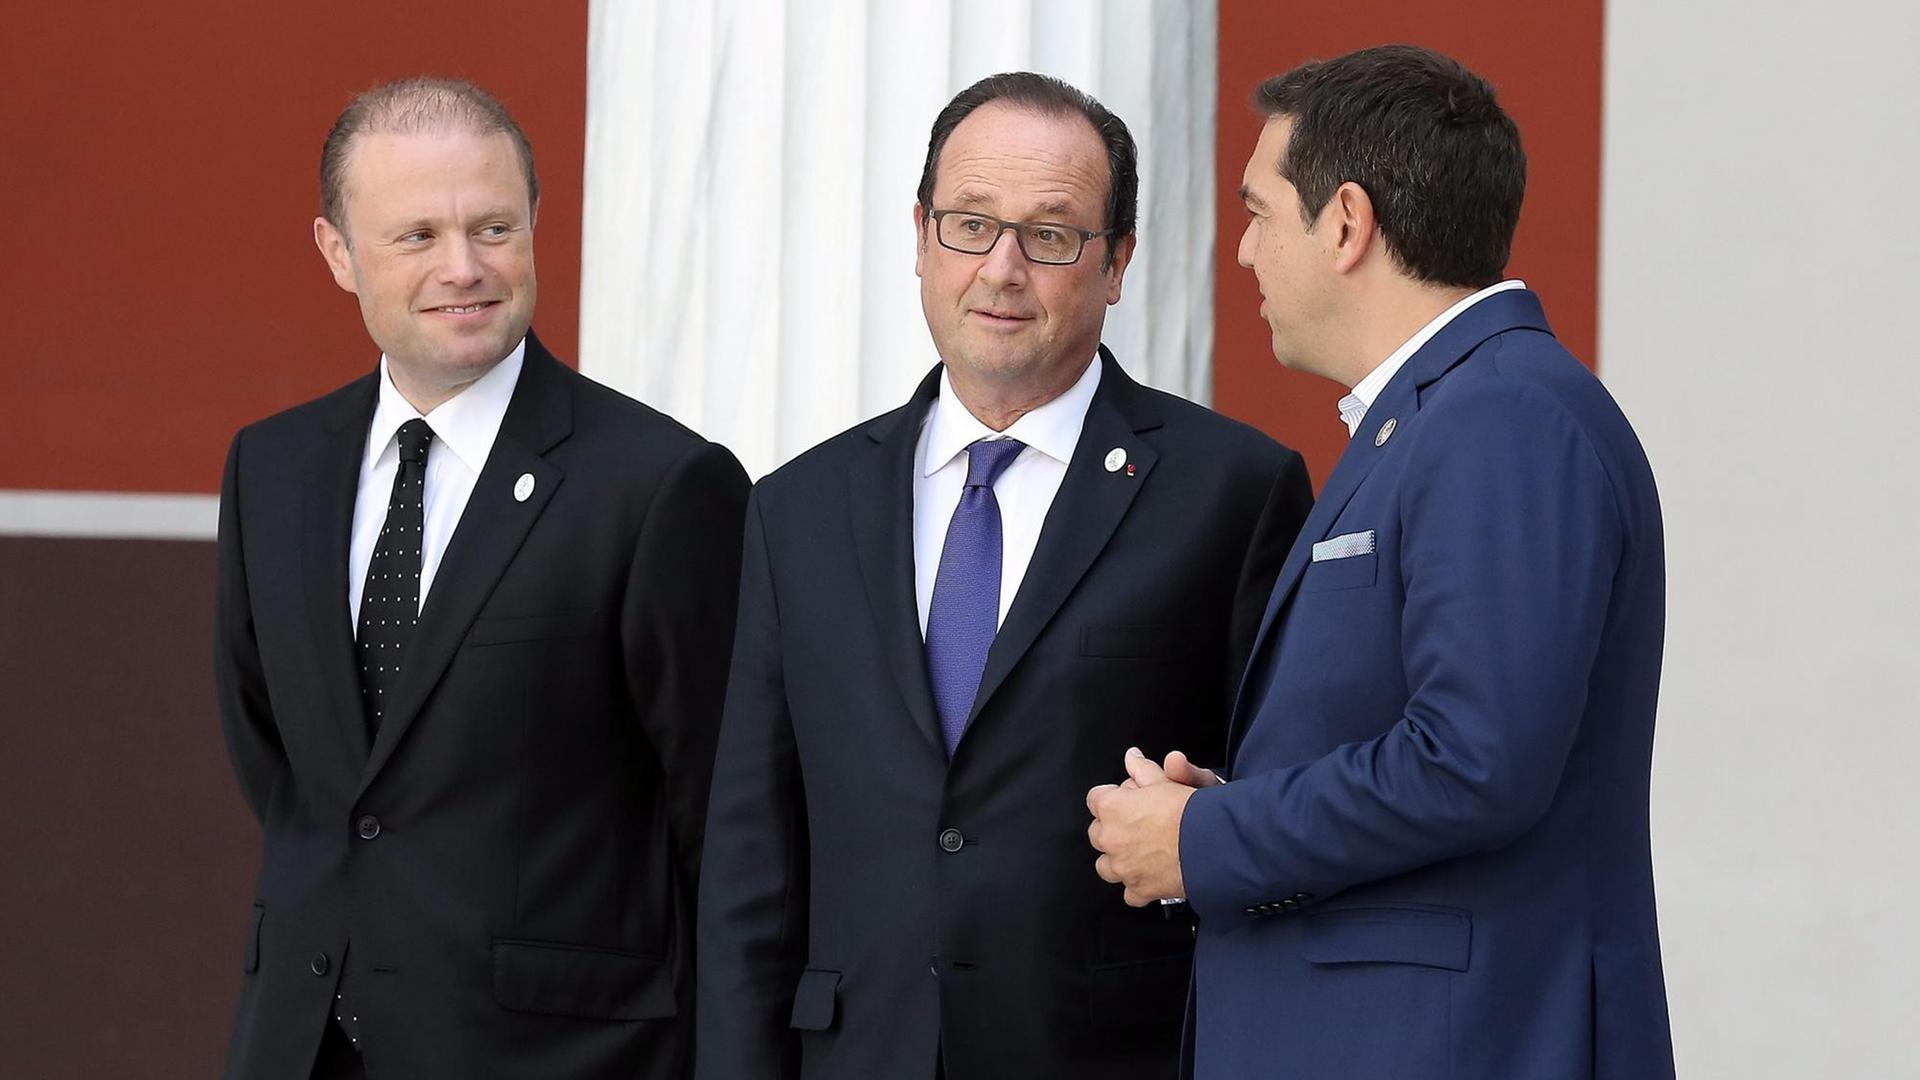 Der griechische Regierungschef Alexis Tsipras (r.), Frankreichs Präsident Francois Hollande (M.) und Maltas Premierminister Joseph Muscat (l.) scherzen auf dem Weg zu einem gemeinsamen Foto beim Südeuropa-Gipfel in Athen.